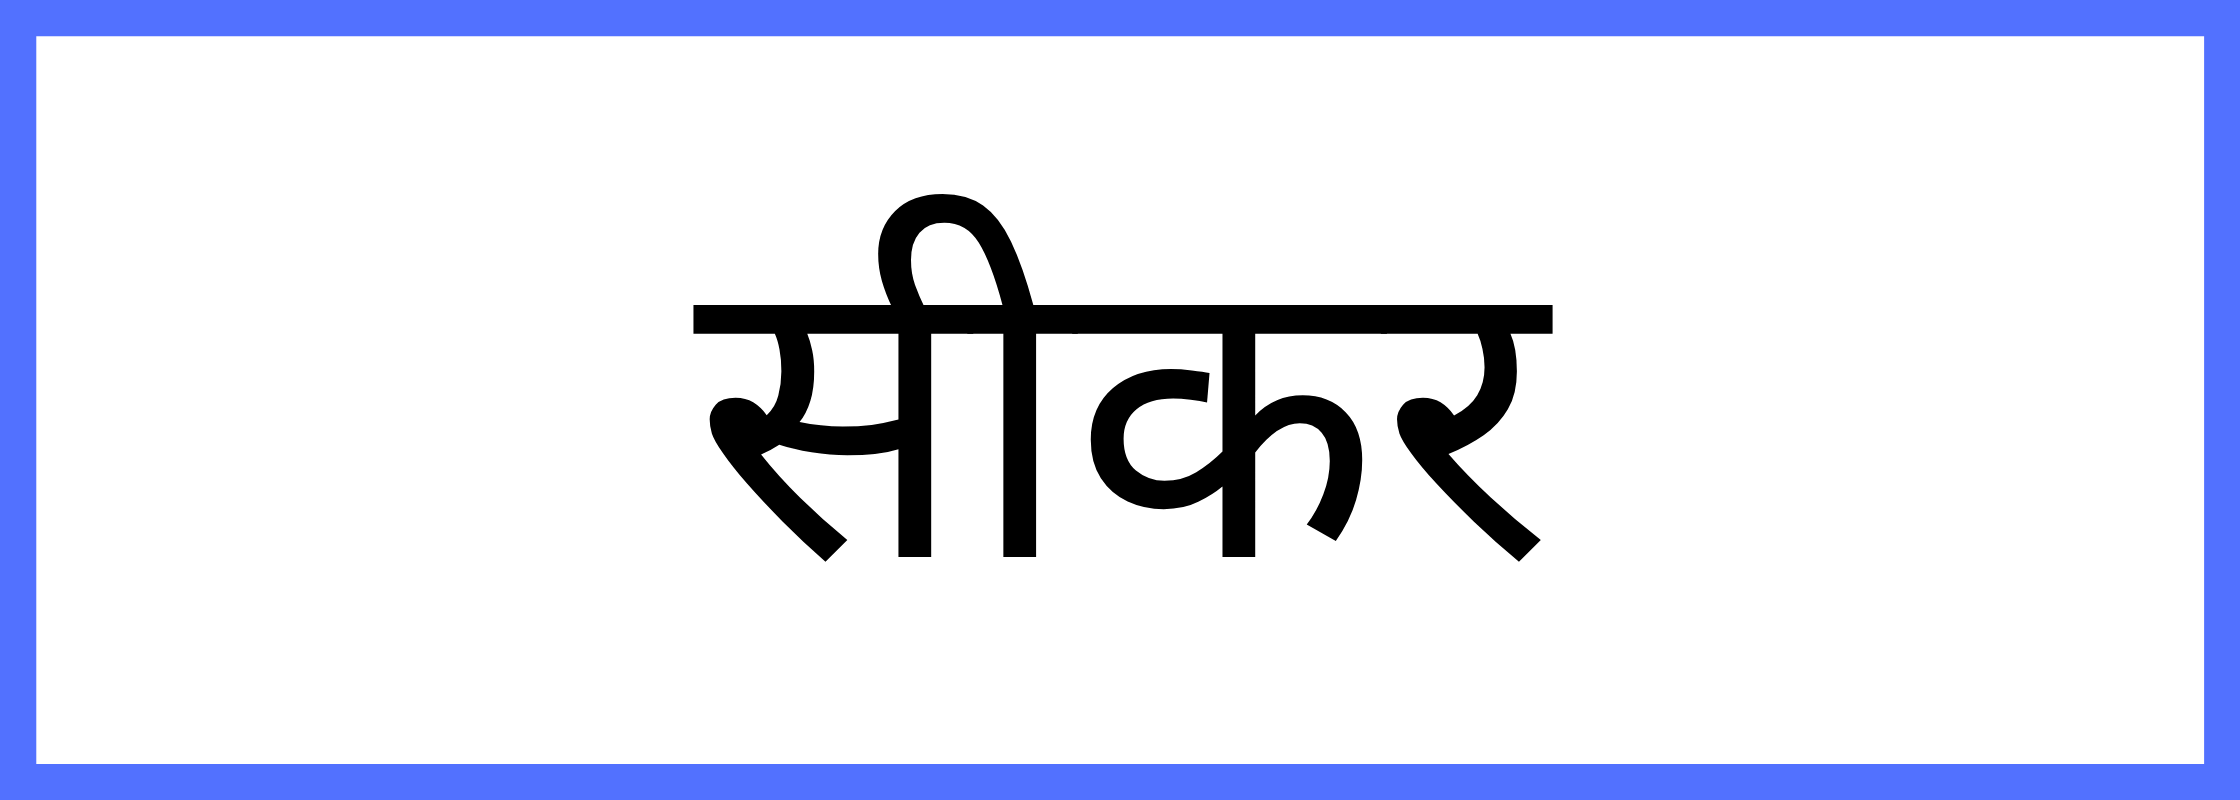 सीकर-Sikar-mandi-bhav